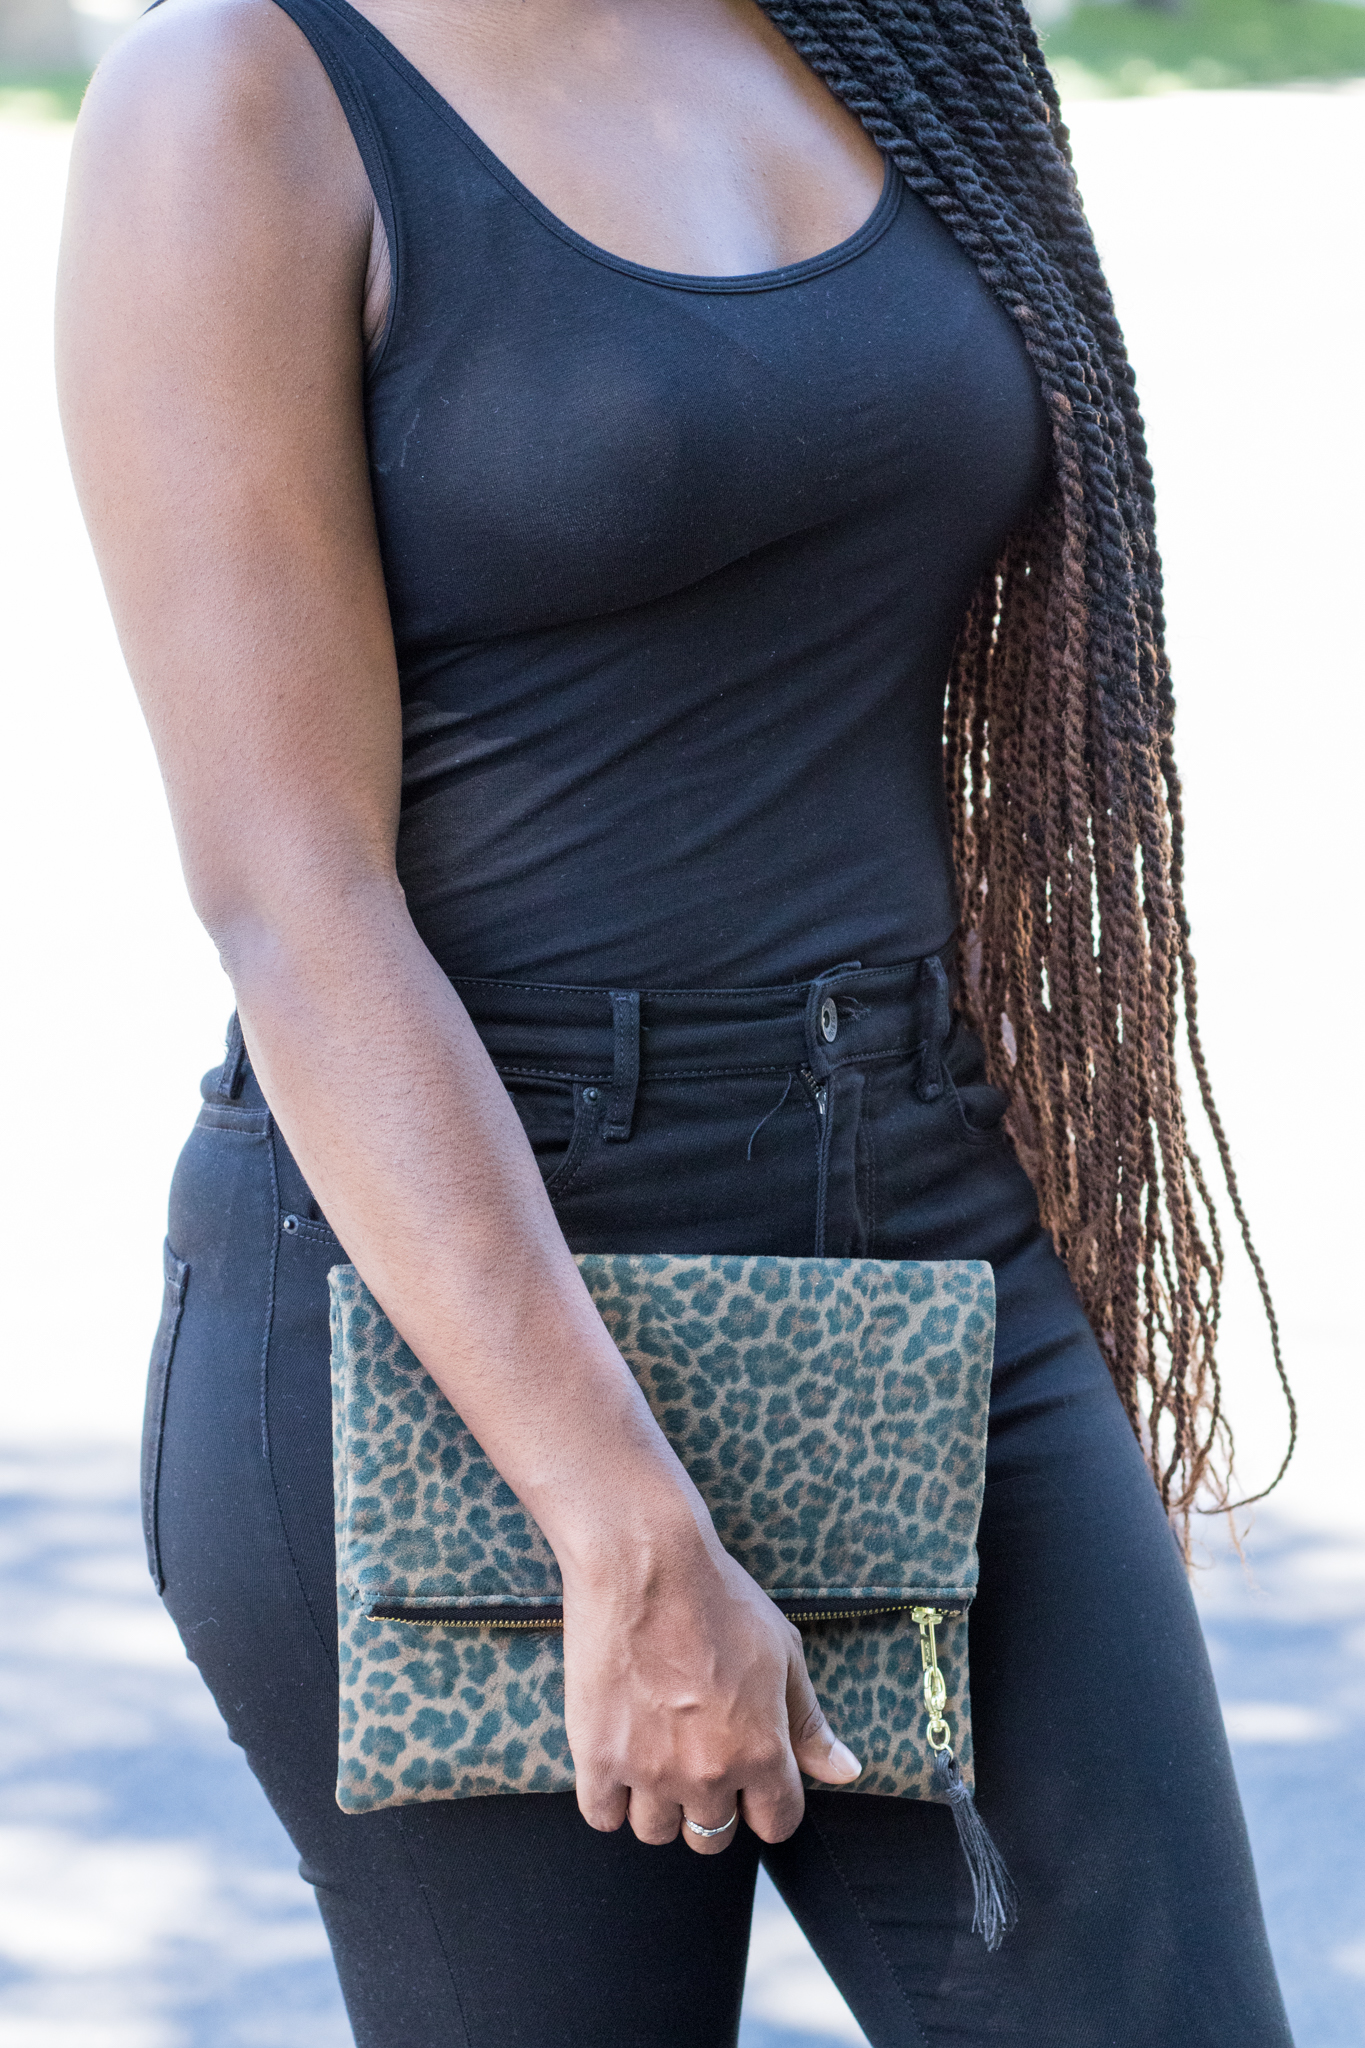 DIY Cheetah clutch purse crossbody bag tutorial